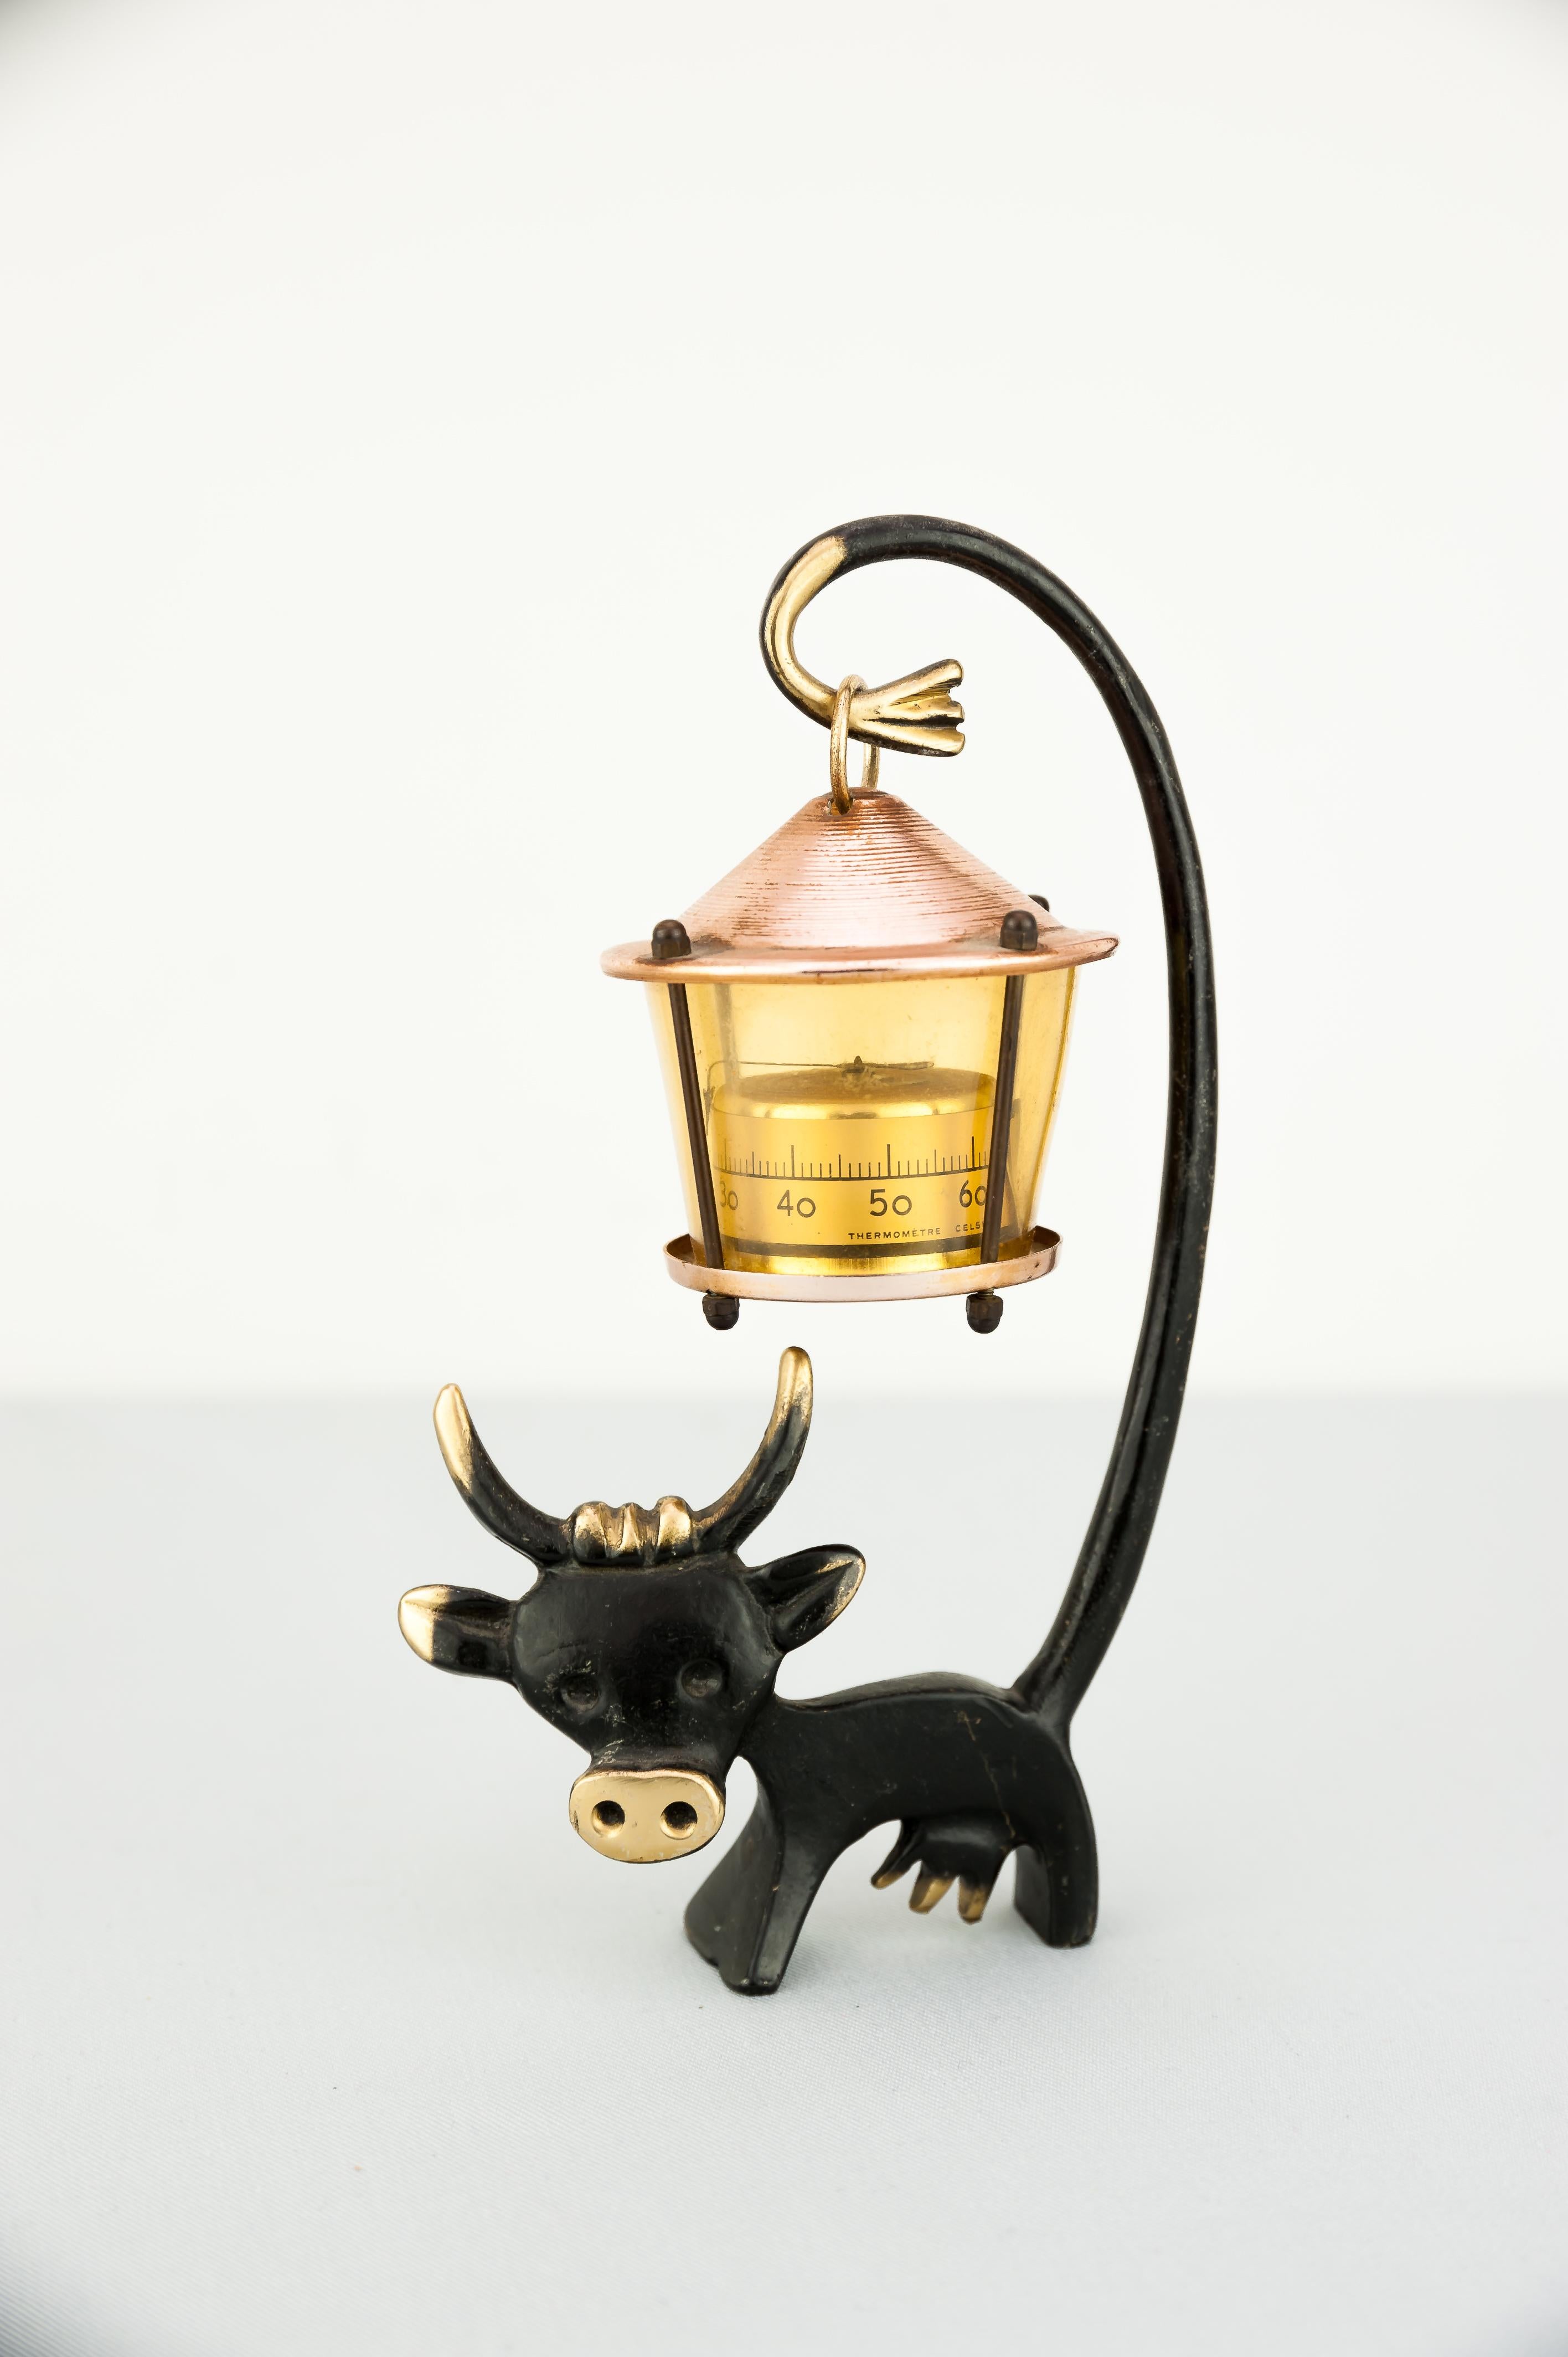 Kuh-Figur mit Thermometer von Walter Bosse
Ursprünglicher Zustand.